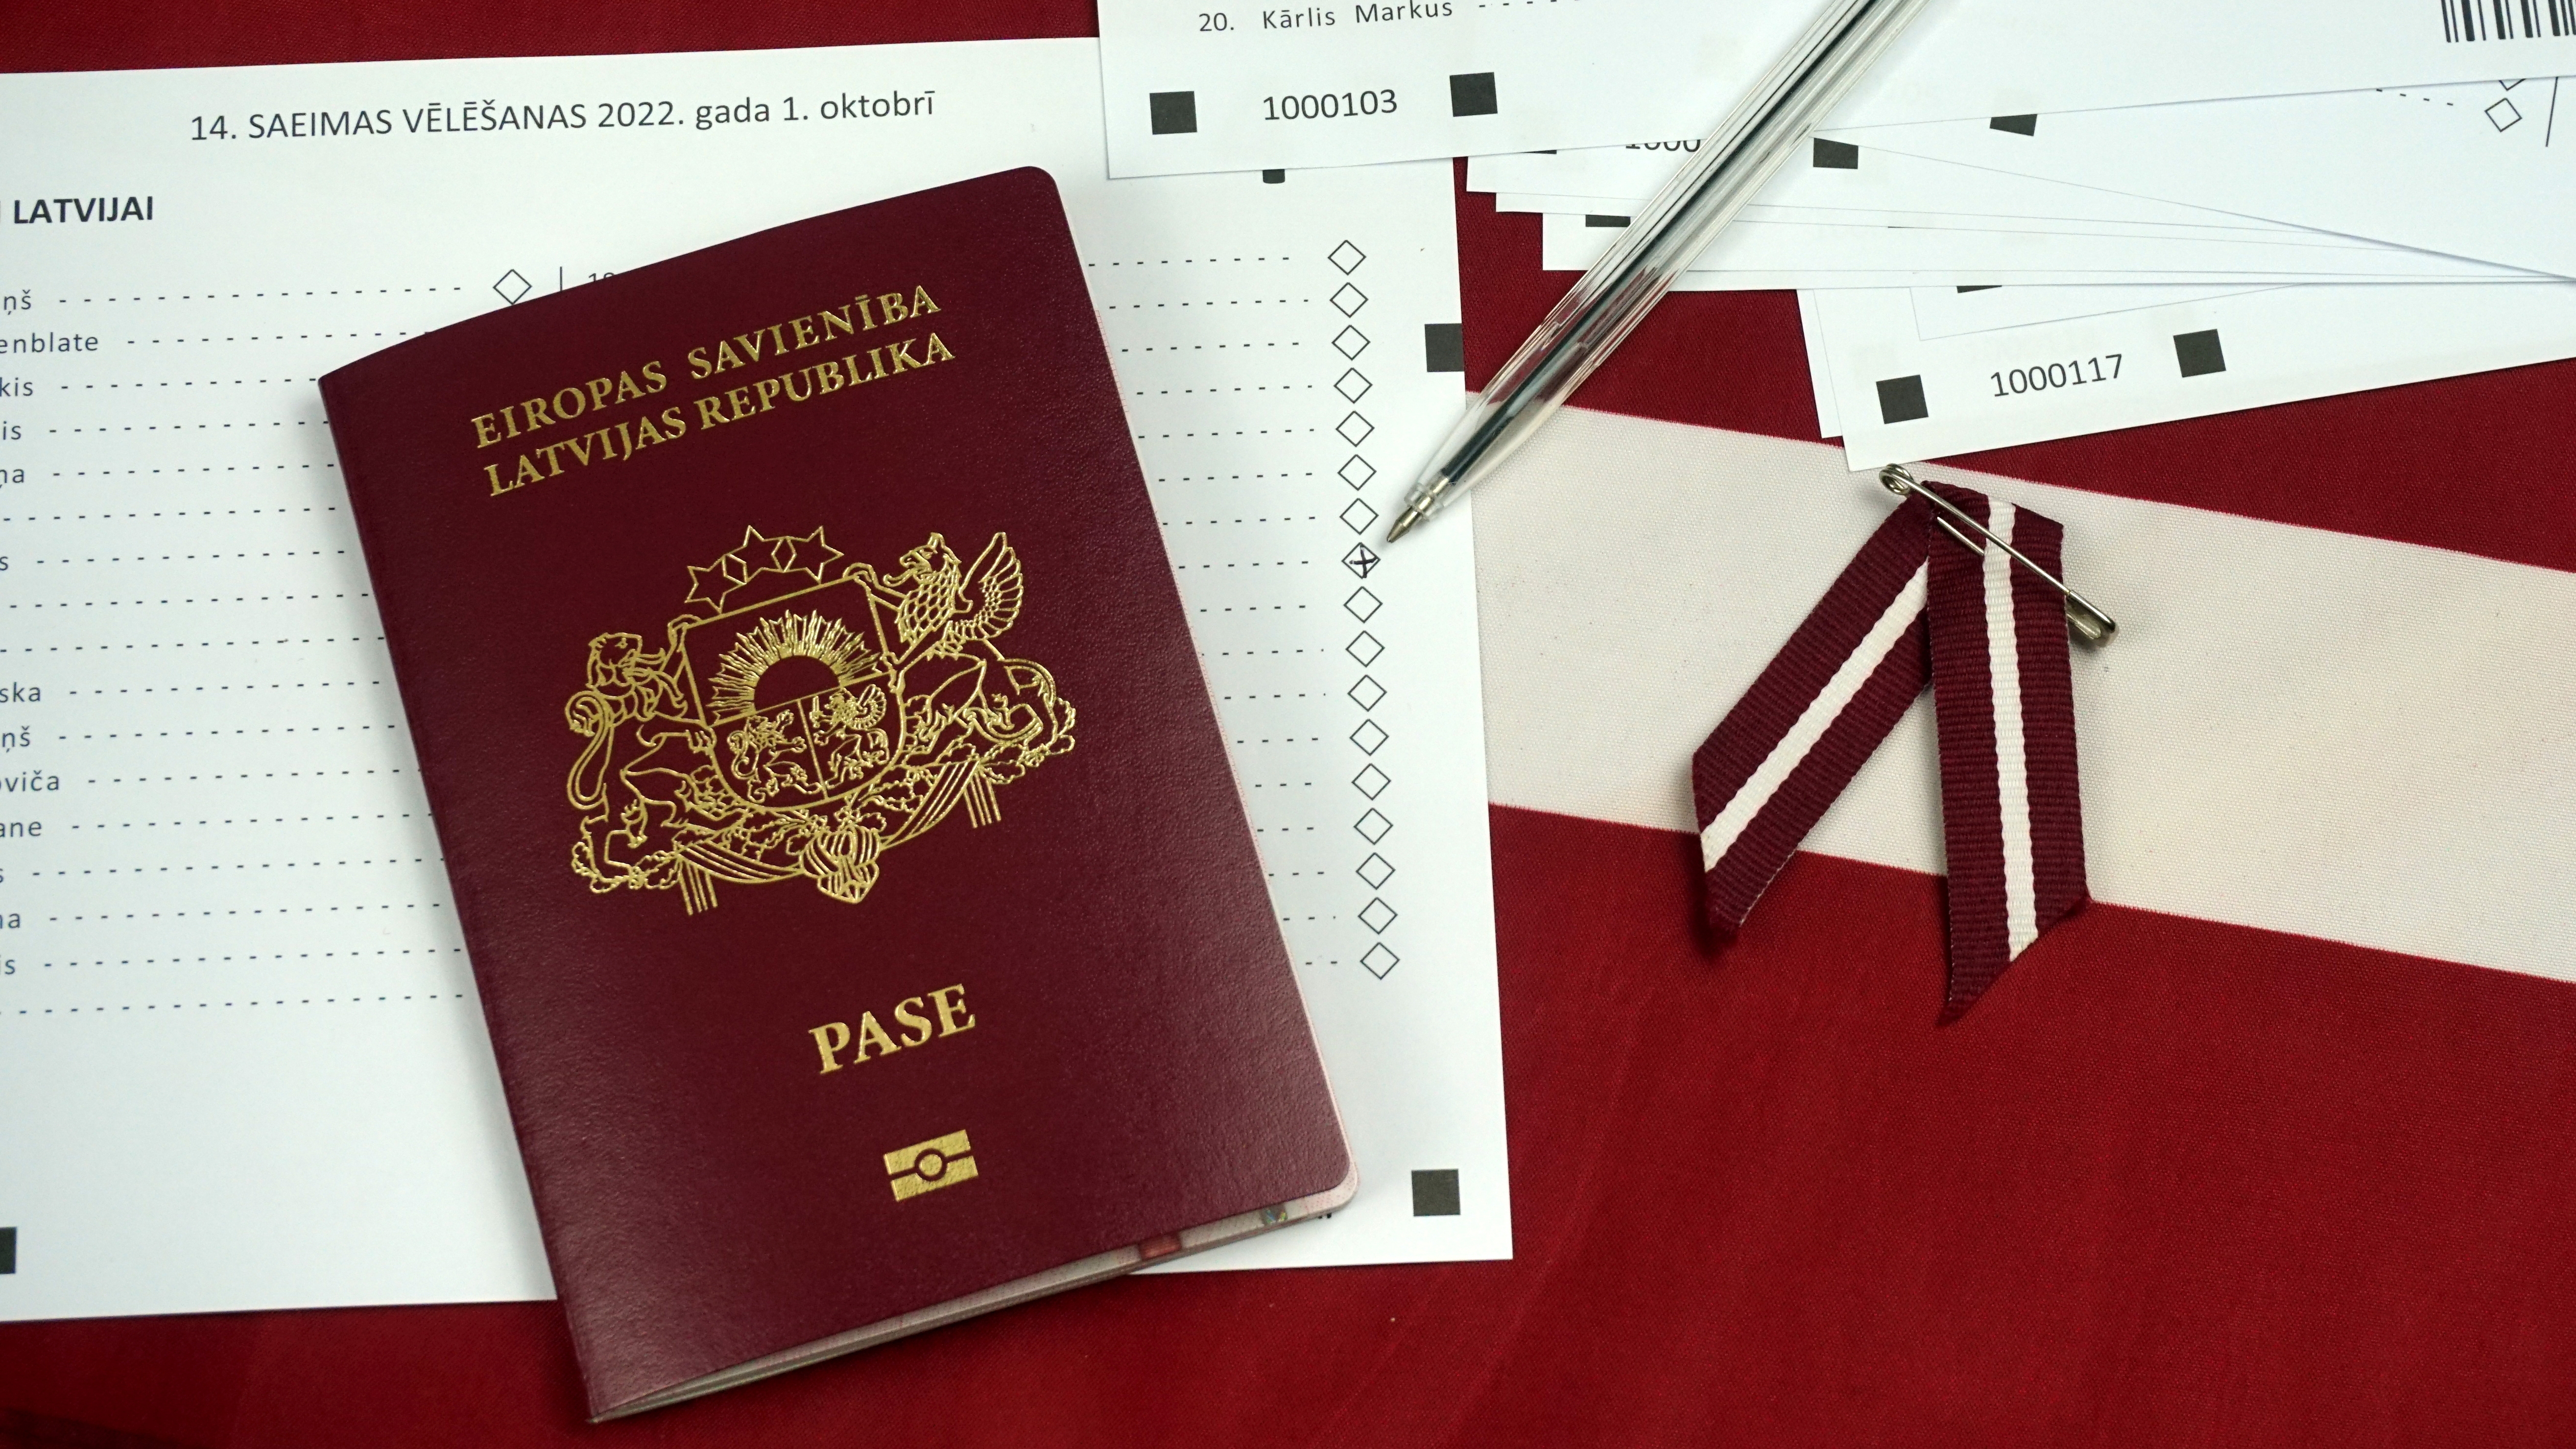 Паcпорт гражданина Латвии